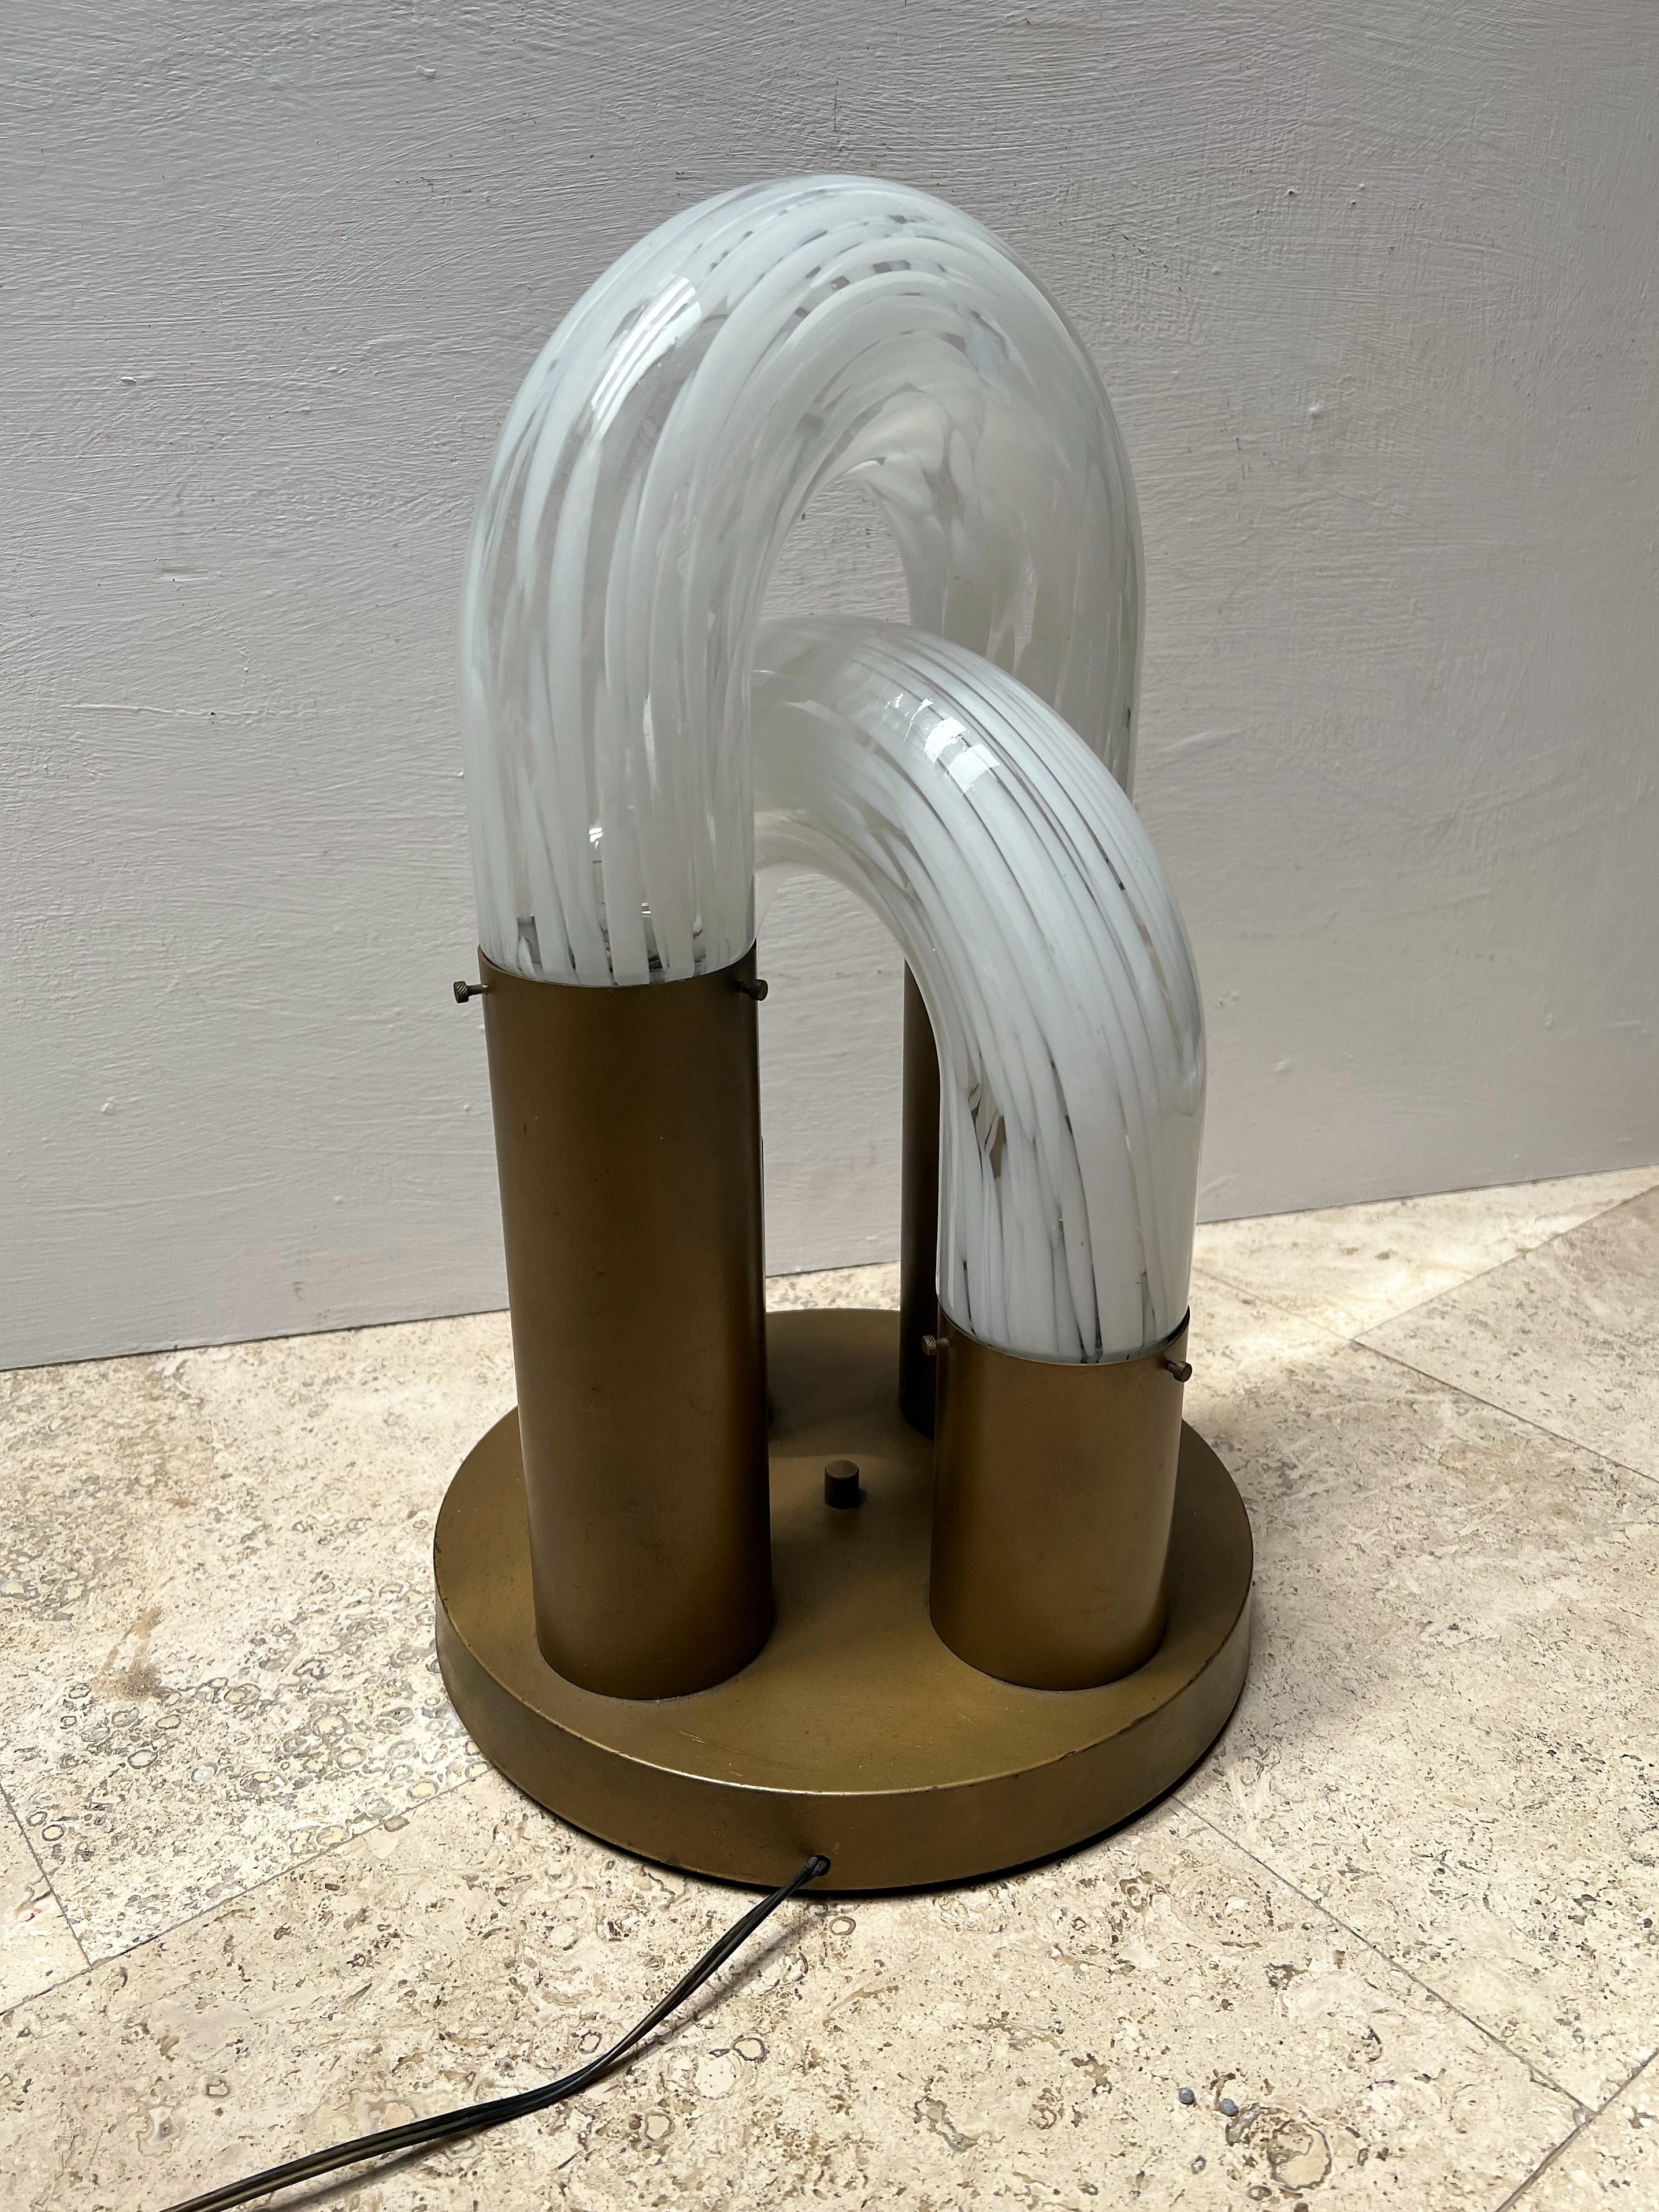 Vierflammige Space-Age-Lampe, entworfen von Aldo Nason um 1970 aus Murano, klar  und weißem Glas mit einem lackierten Metallsockel.
Diese Leuchte war ursprünglich für einen Tisch gedacht, lässt sich aber auch leicht als Unterputzleuchte